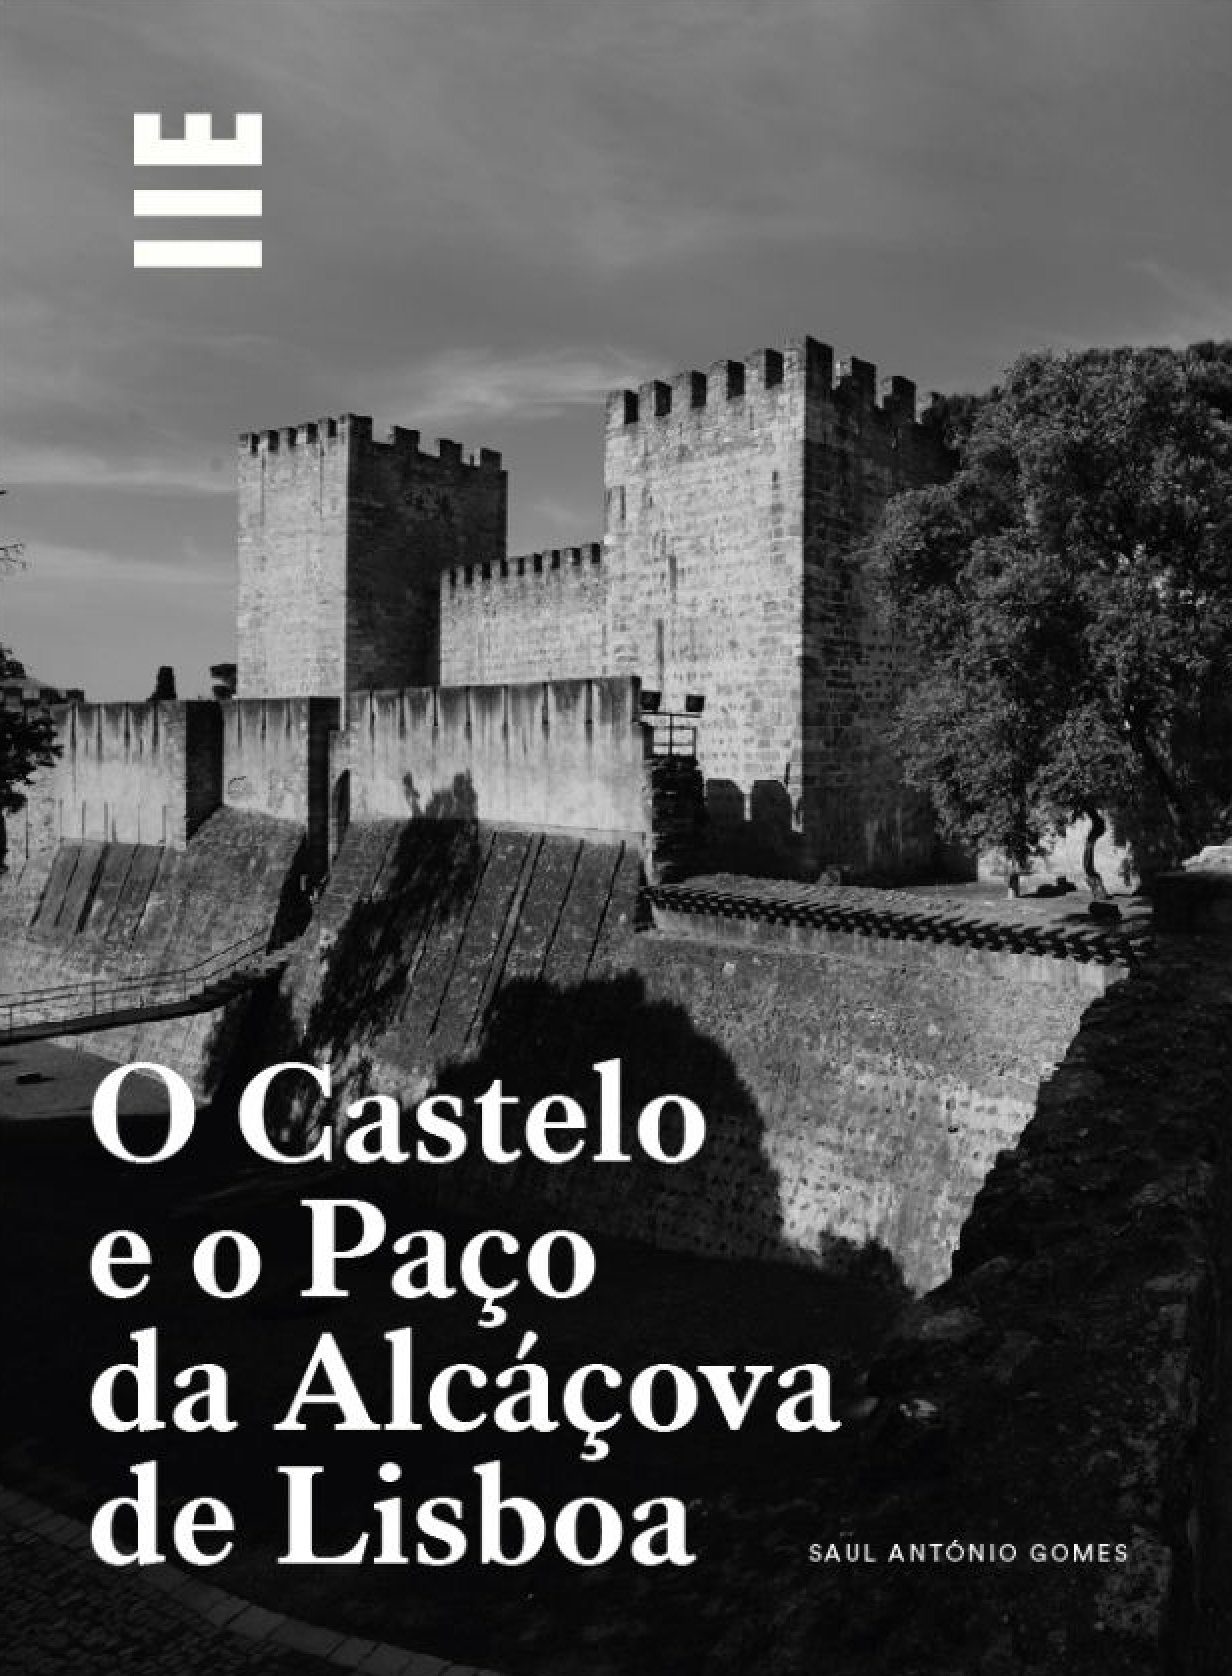 Presentation of the book O Castelo e o Paço da Alcáçova de Lisboa, by Saul António Gomes, researcher at the CHSC.